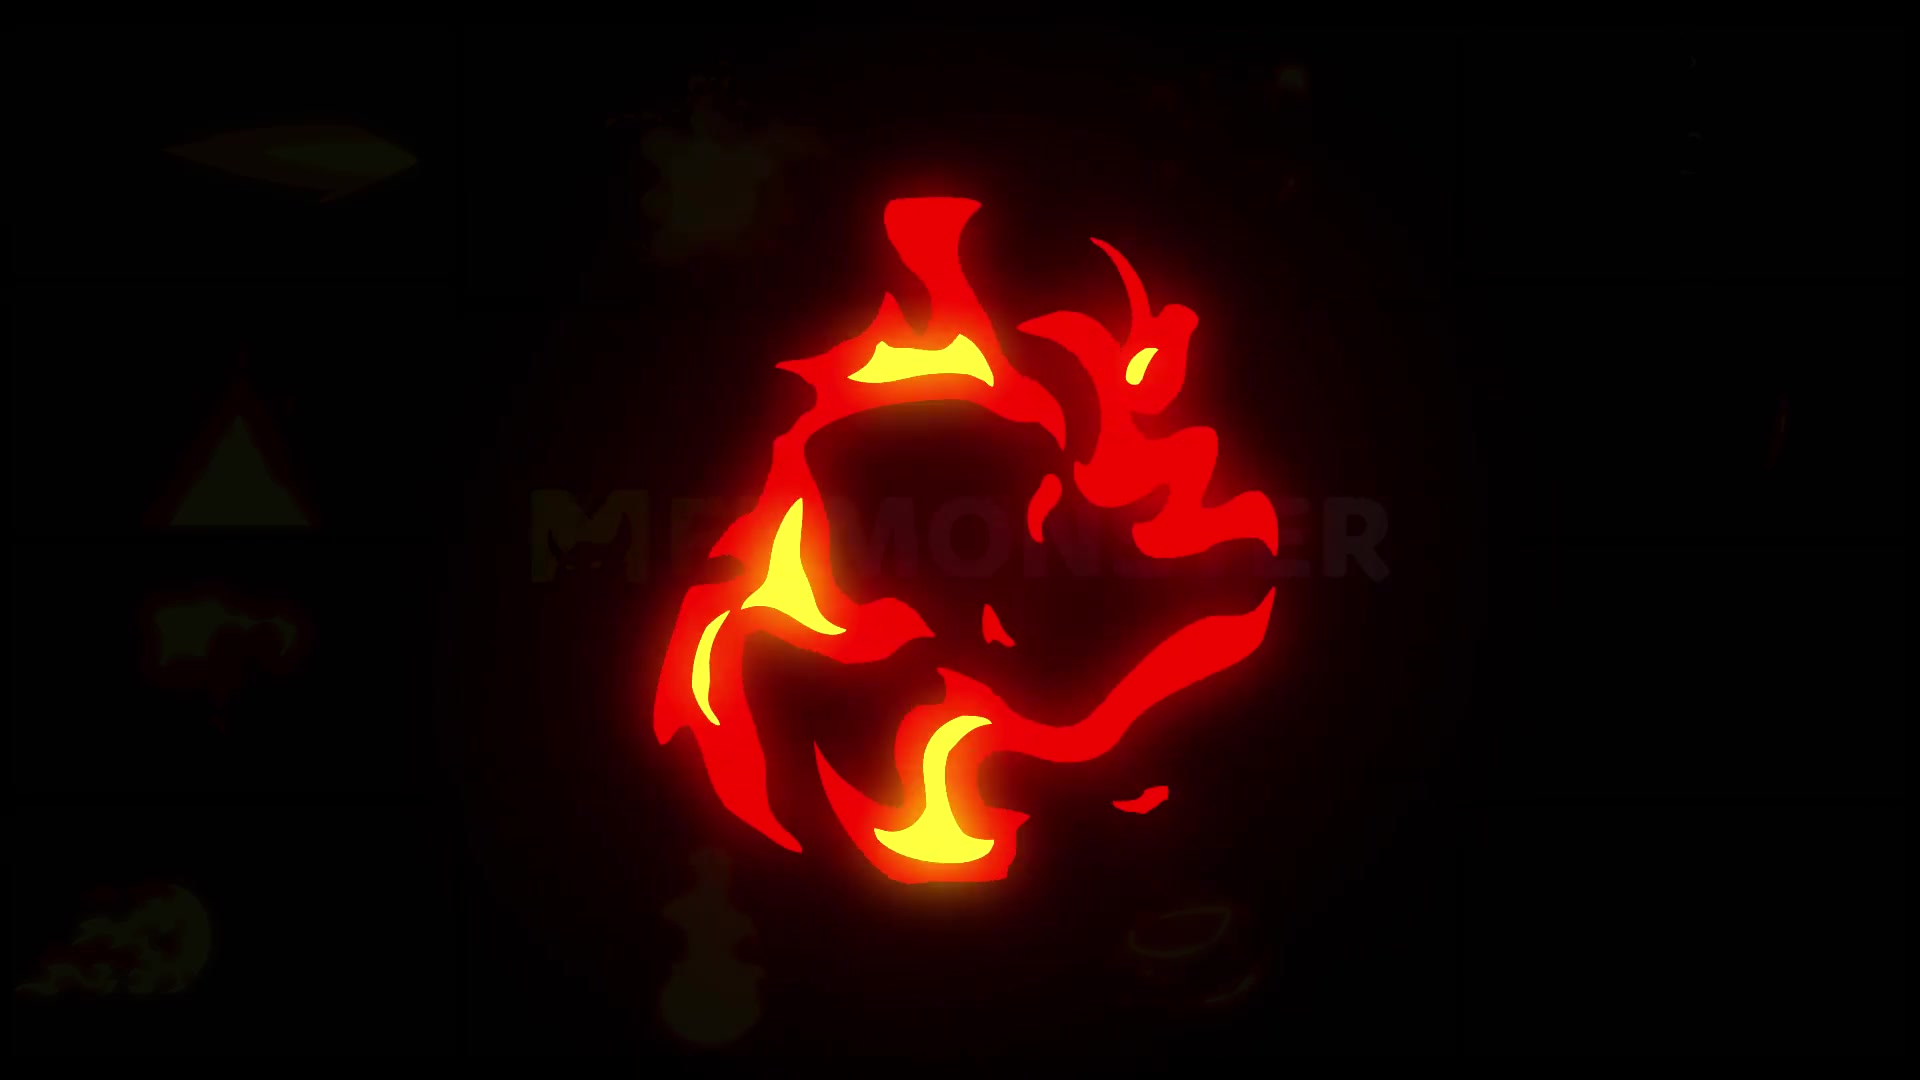 Flame Elements | Premiere Pro MOGRT Videohive 28895835 Premiere Pro Image 10